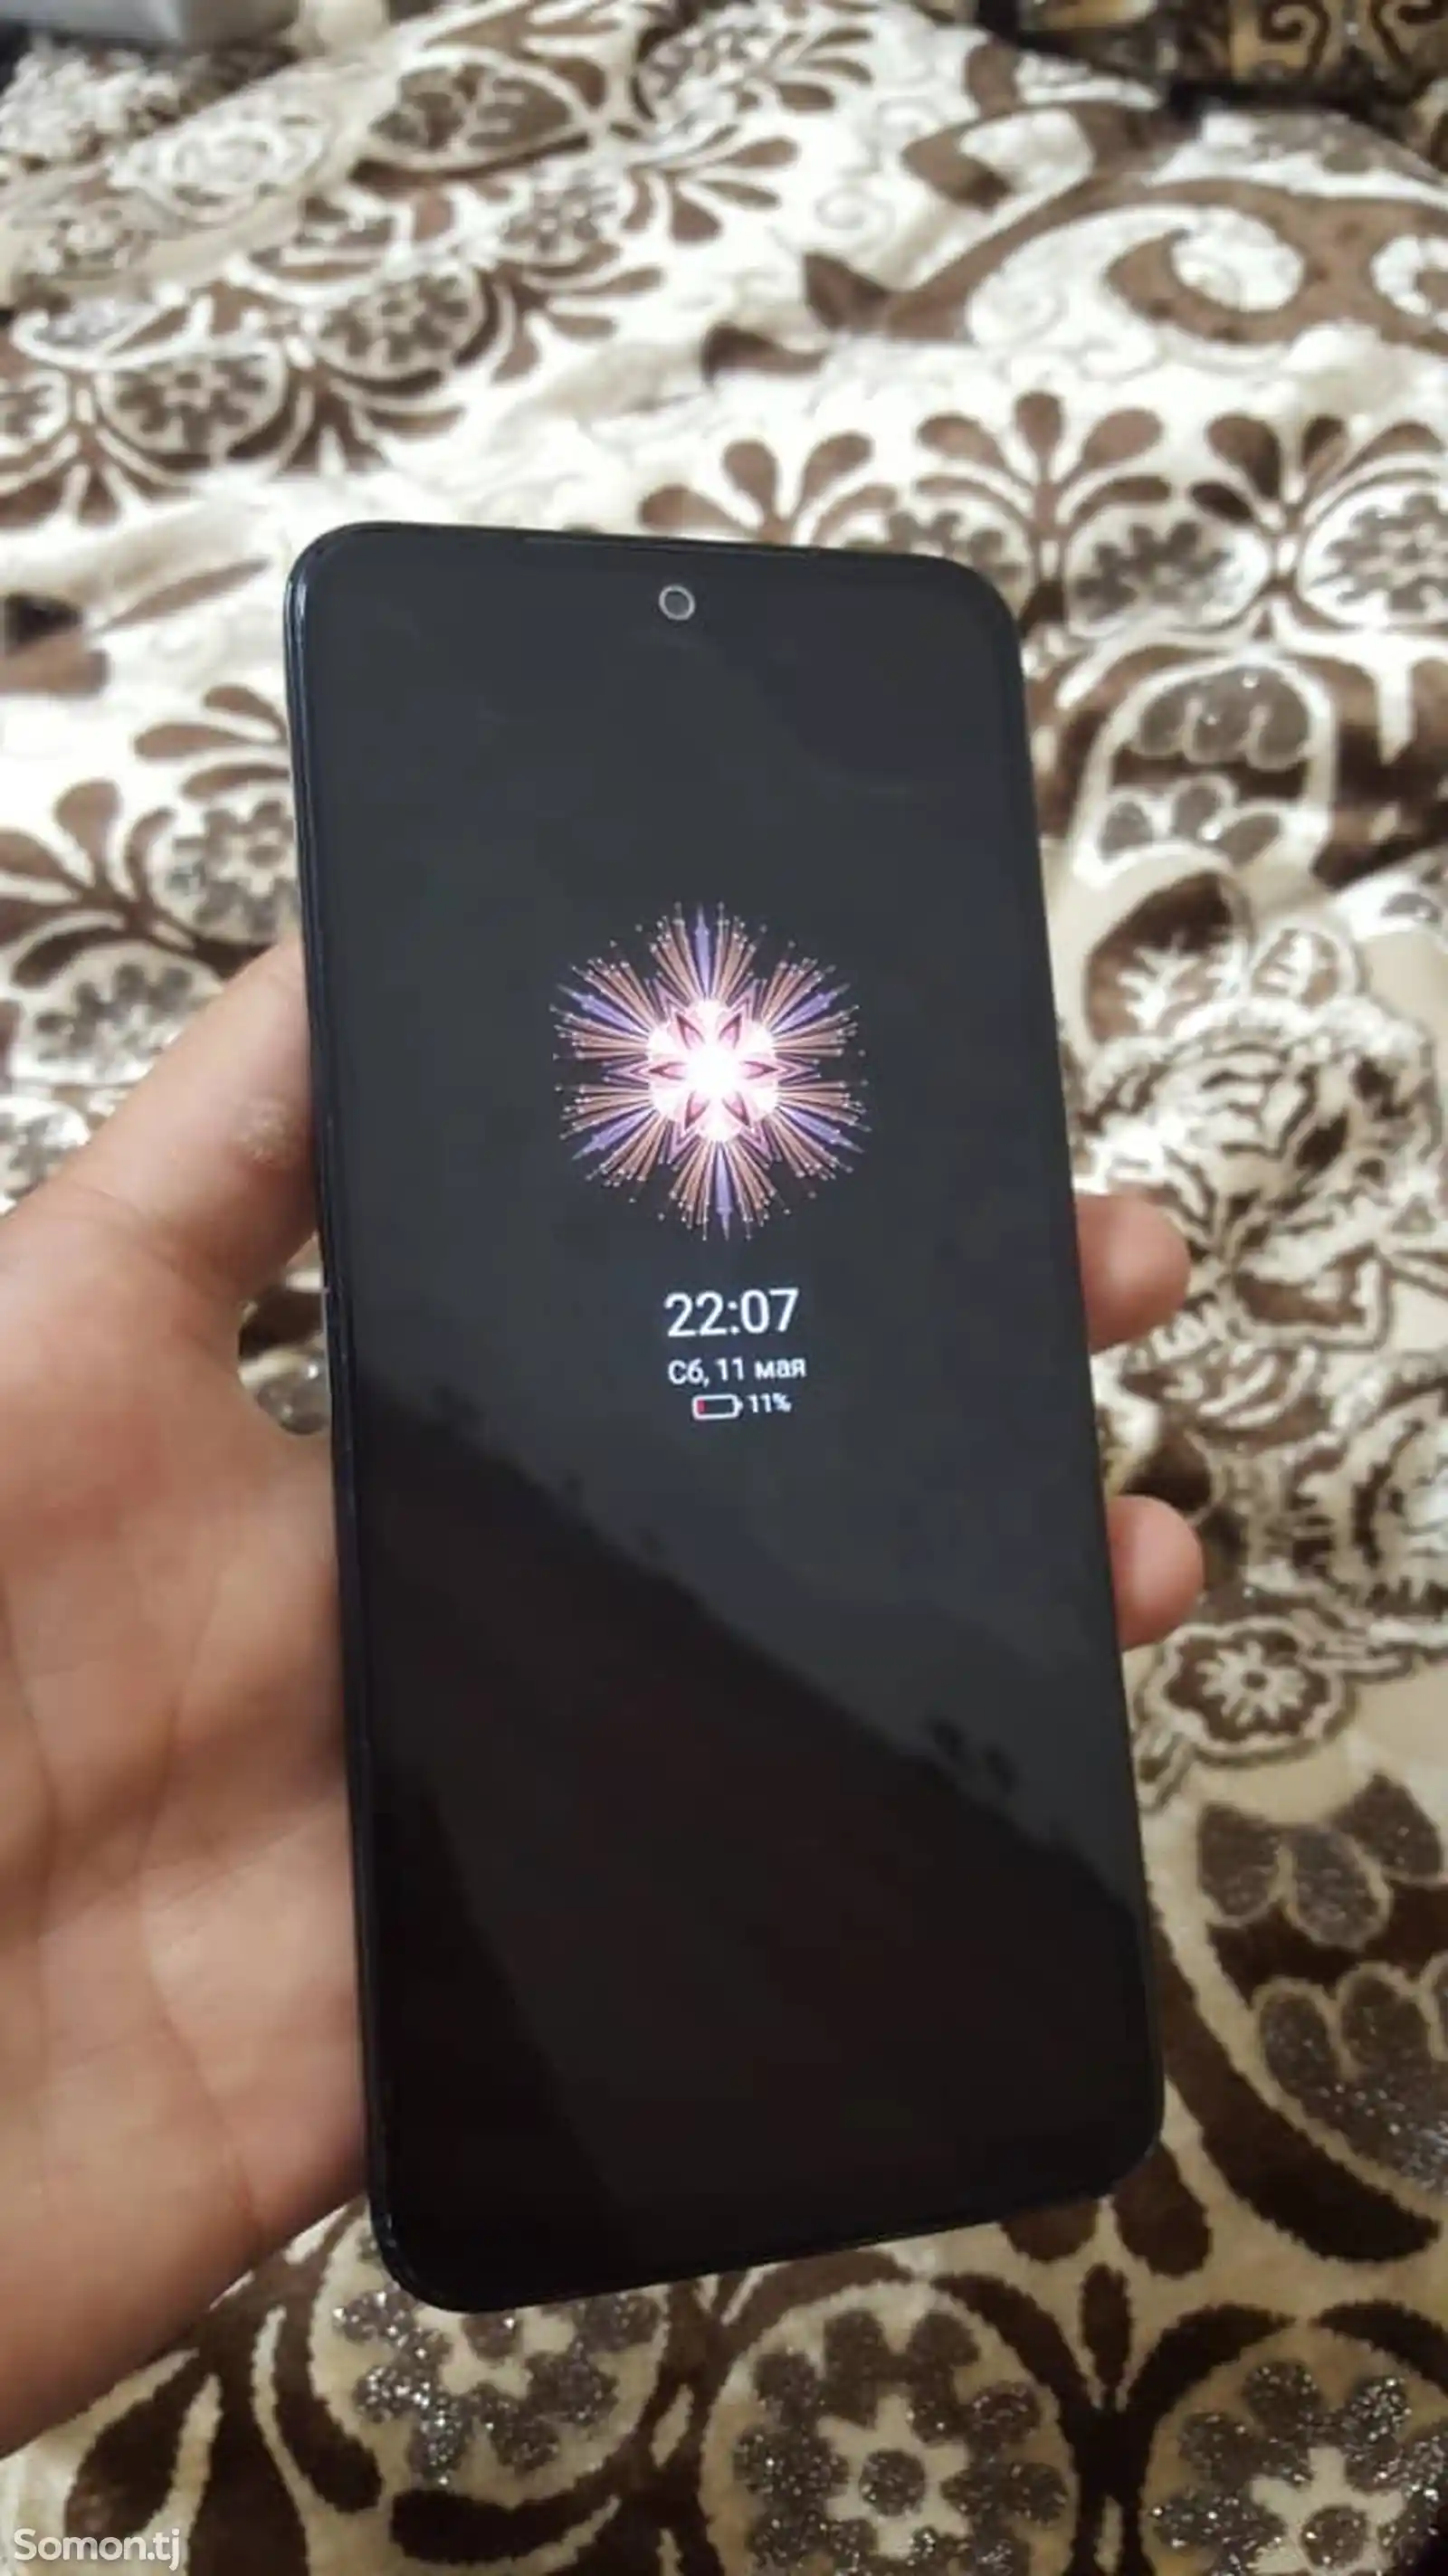 Xiaomi Redmi Note 11-4